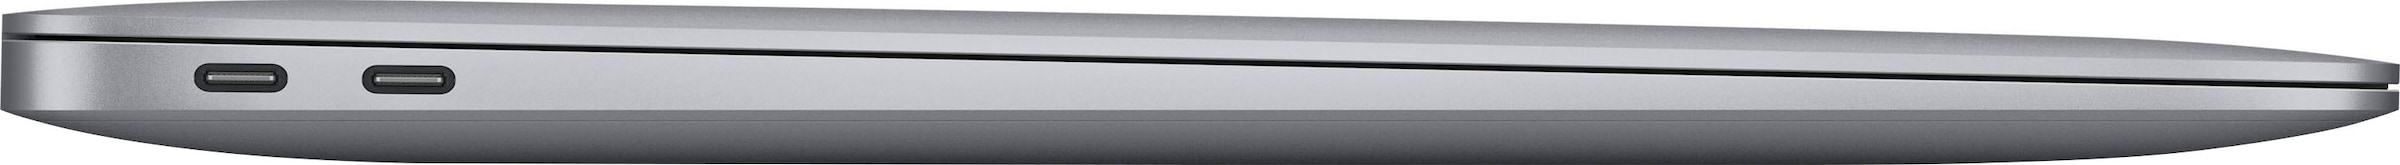 Apple Notebook »MacBook Air«, 33,78 cm, / 13,3 Zoll, Apple, M1, M1, 512 GB  SSD, 8-core CPU auf Raten kaufen